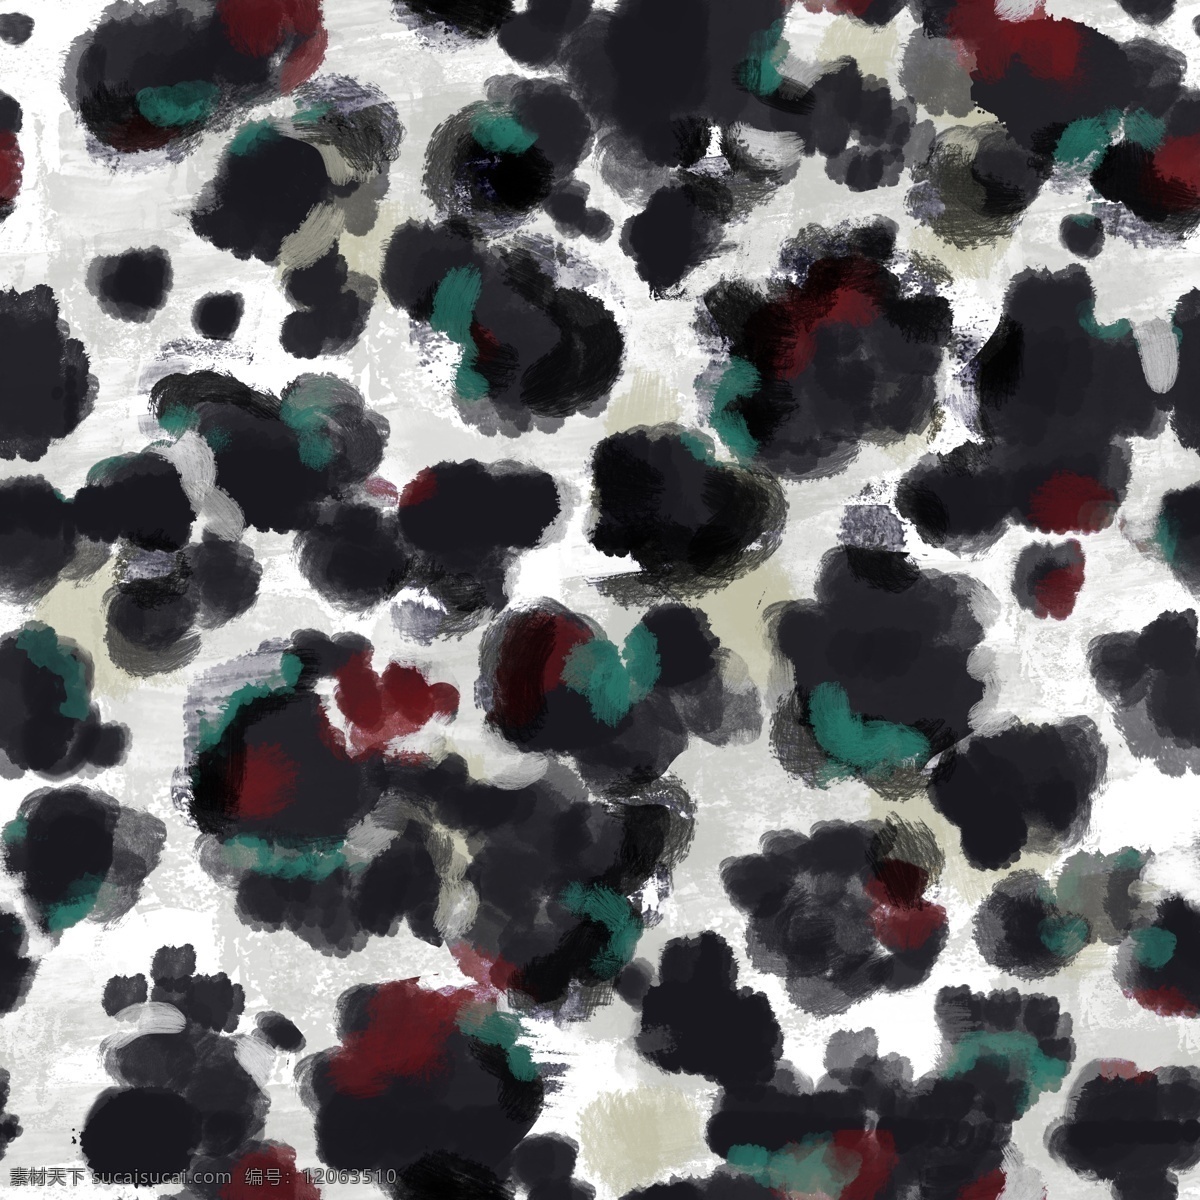 抽象机理图片 豹纹 豹点 四色豹纹 抽象豹纹 数码印花 花布 桌布 分层 背景素材